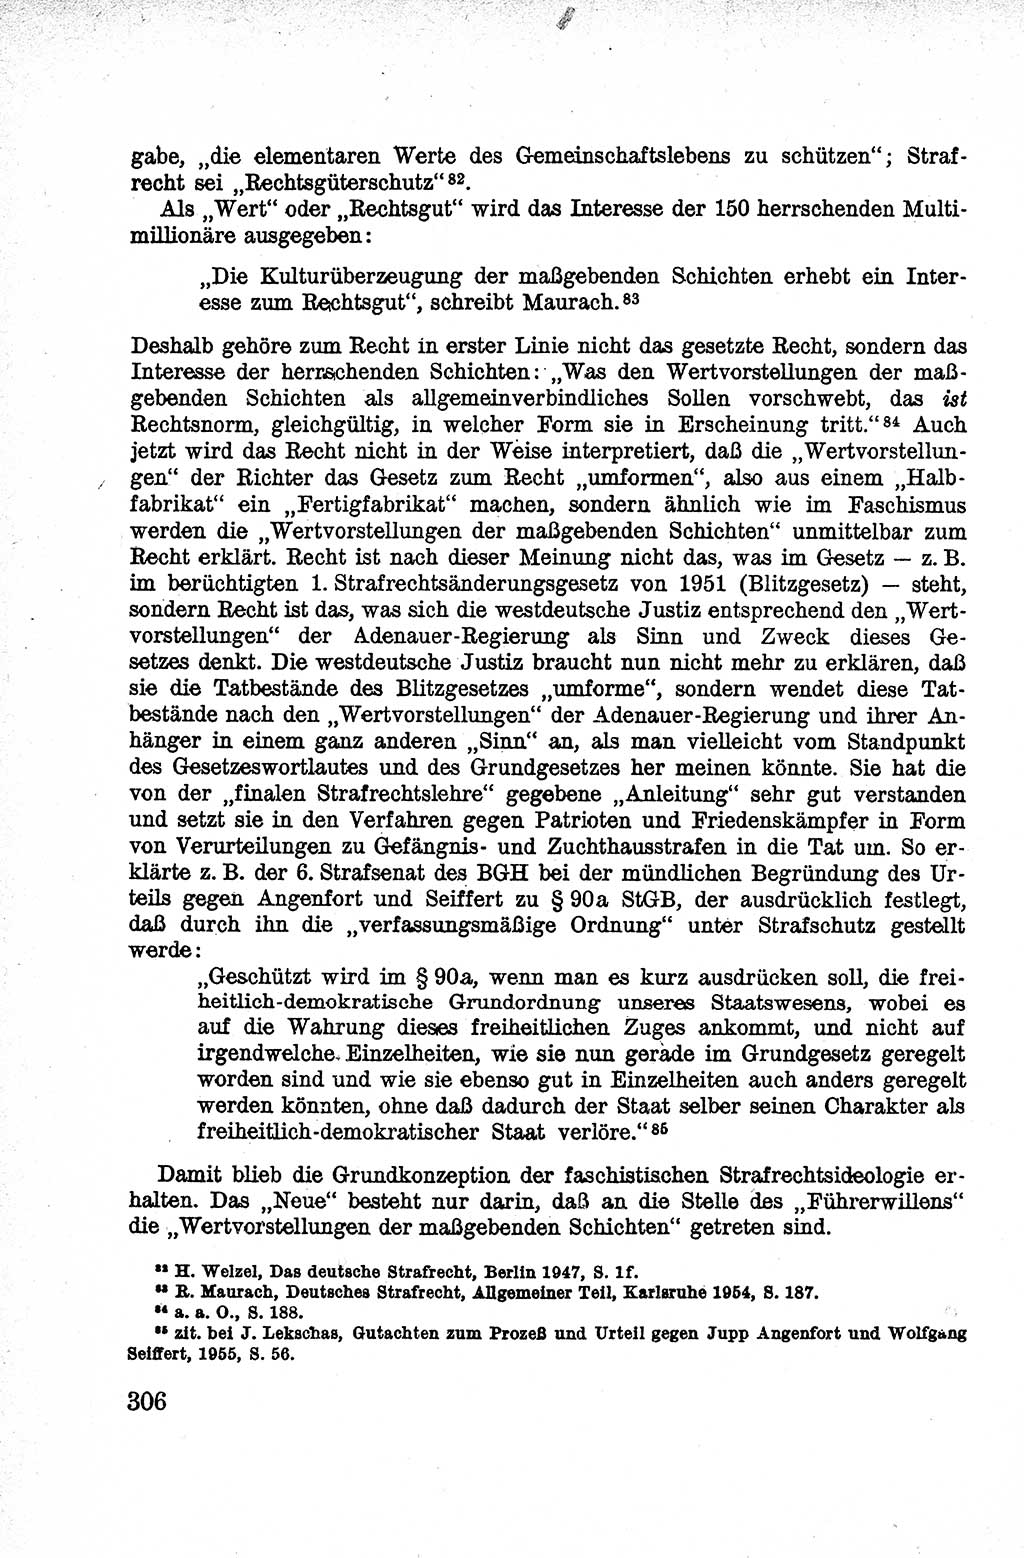 Lehrbuch des Strafrechts der Deutschen Demokratischen Republik (DDR), Allgemeiner Teil 1959, Seite 306 (Lb. Strafr. DDR AT 1959, S. 306)